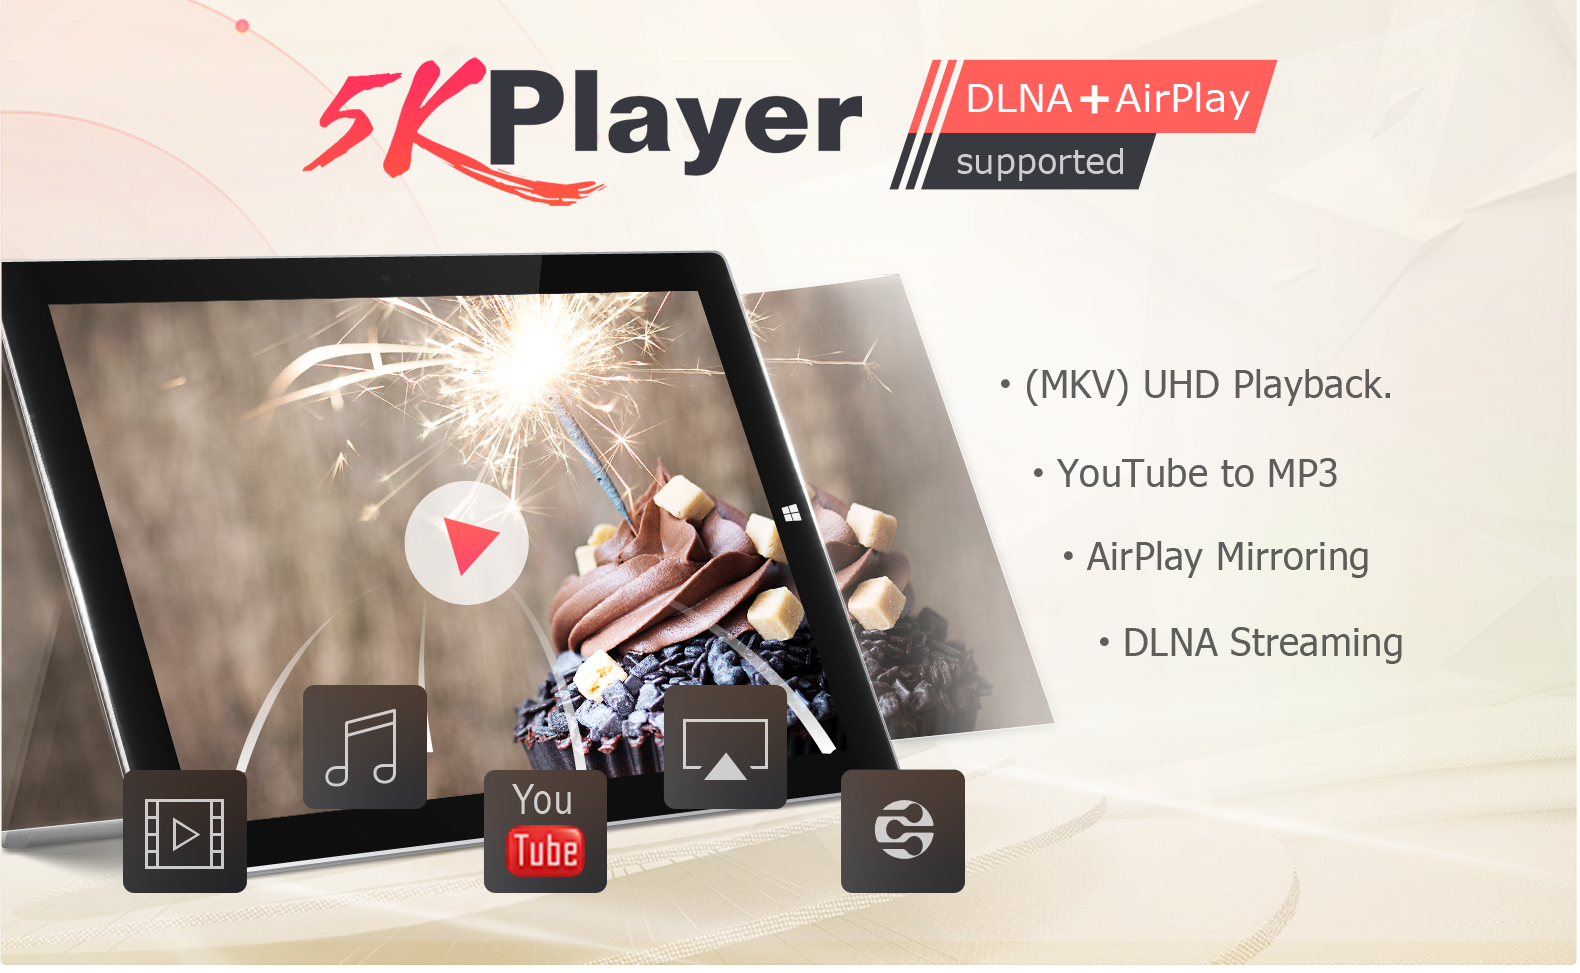 5KPlayer - Phần mềm xem, download, stream và cắt Video 4K tốt nhất